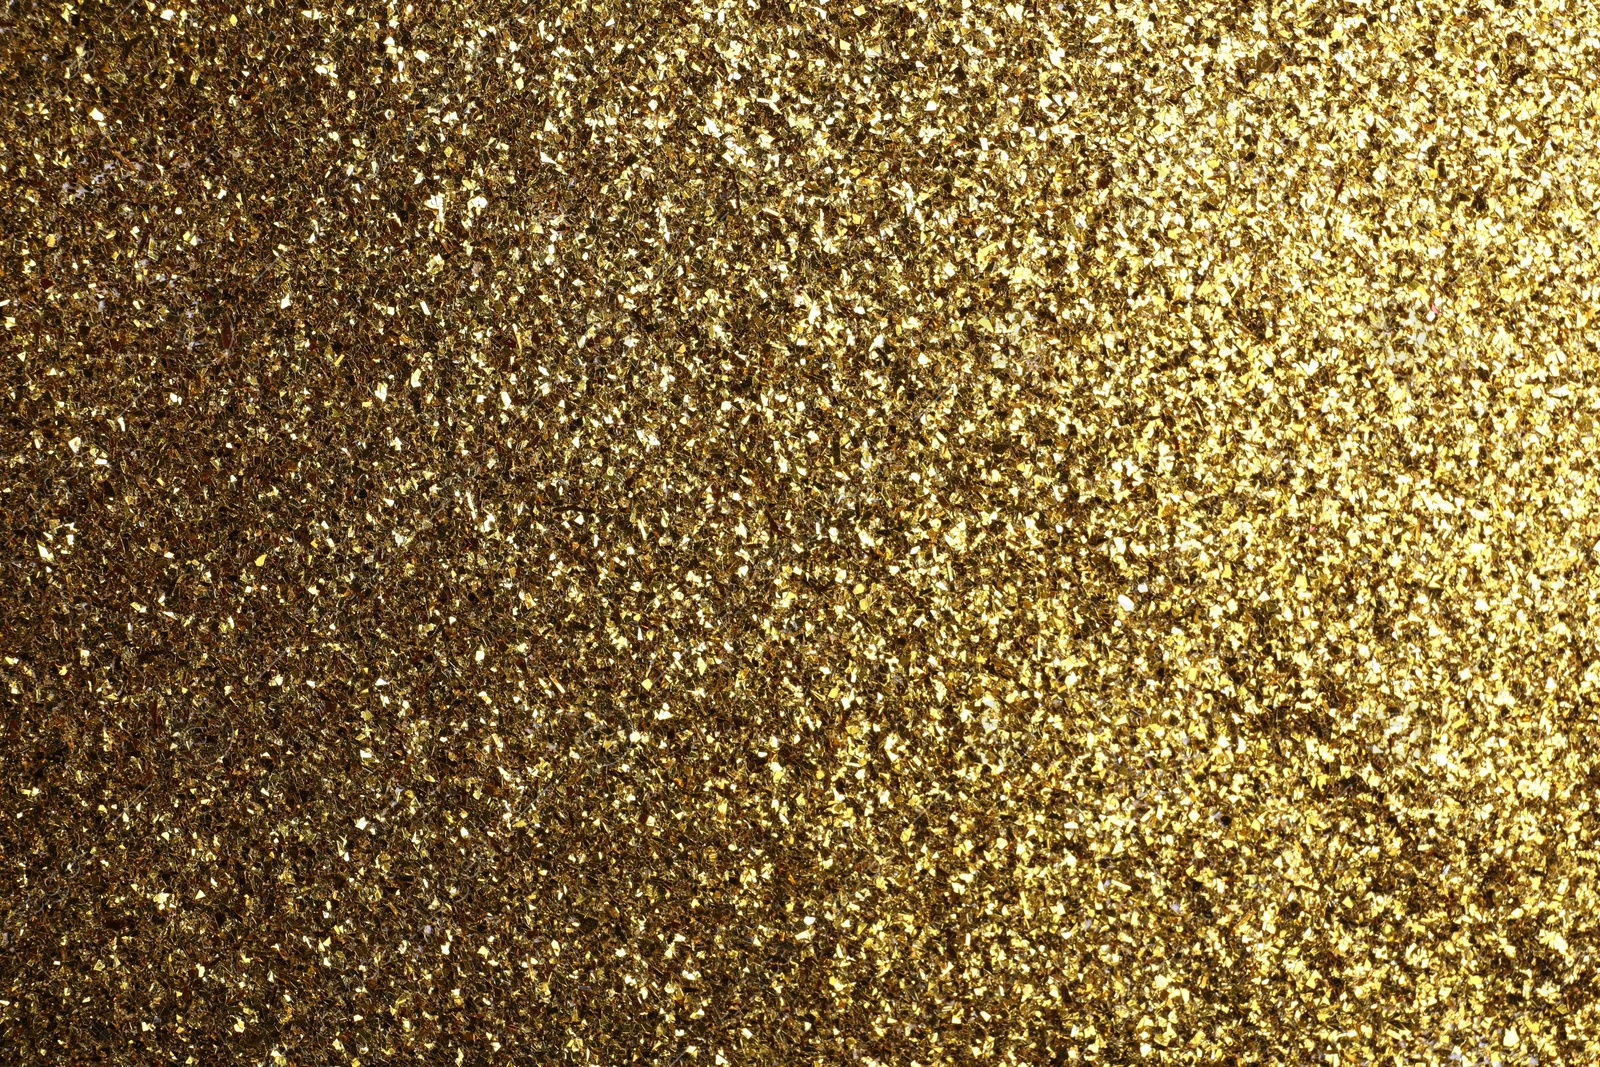 Photo of Beautiful shiny brass glitter as background, closeup